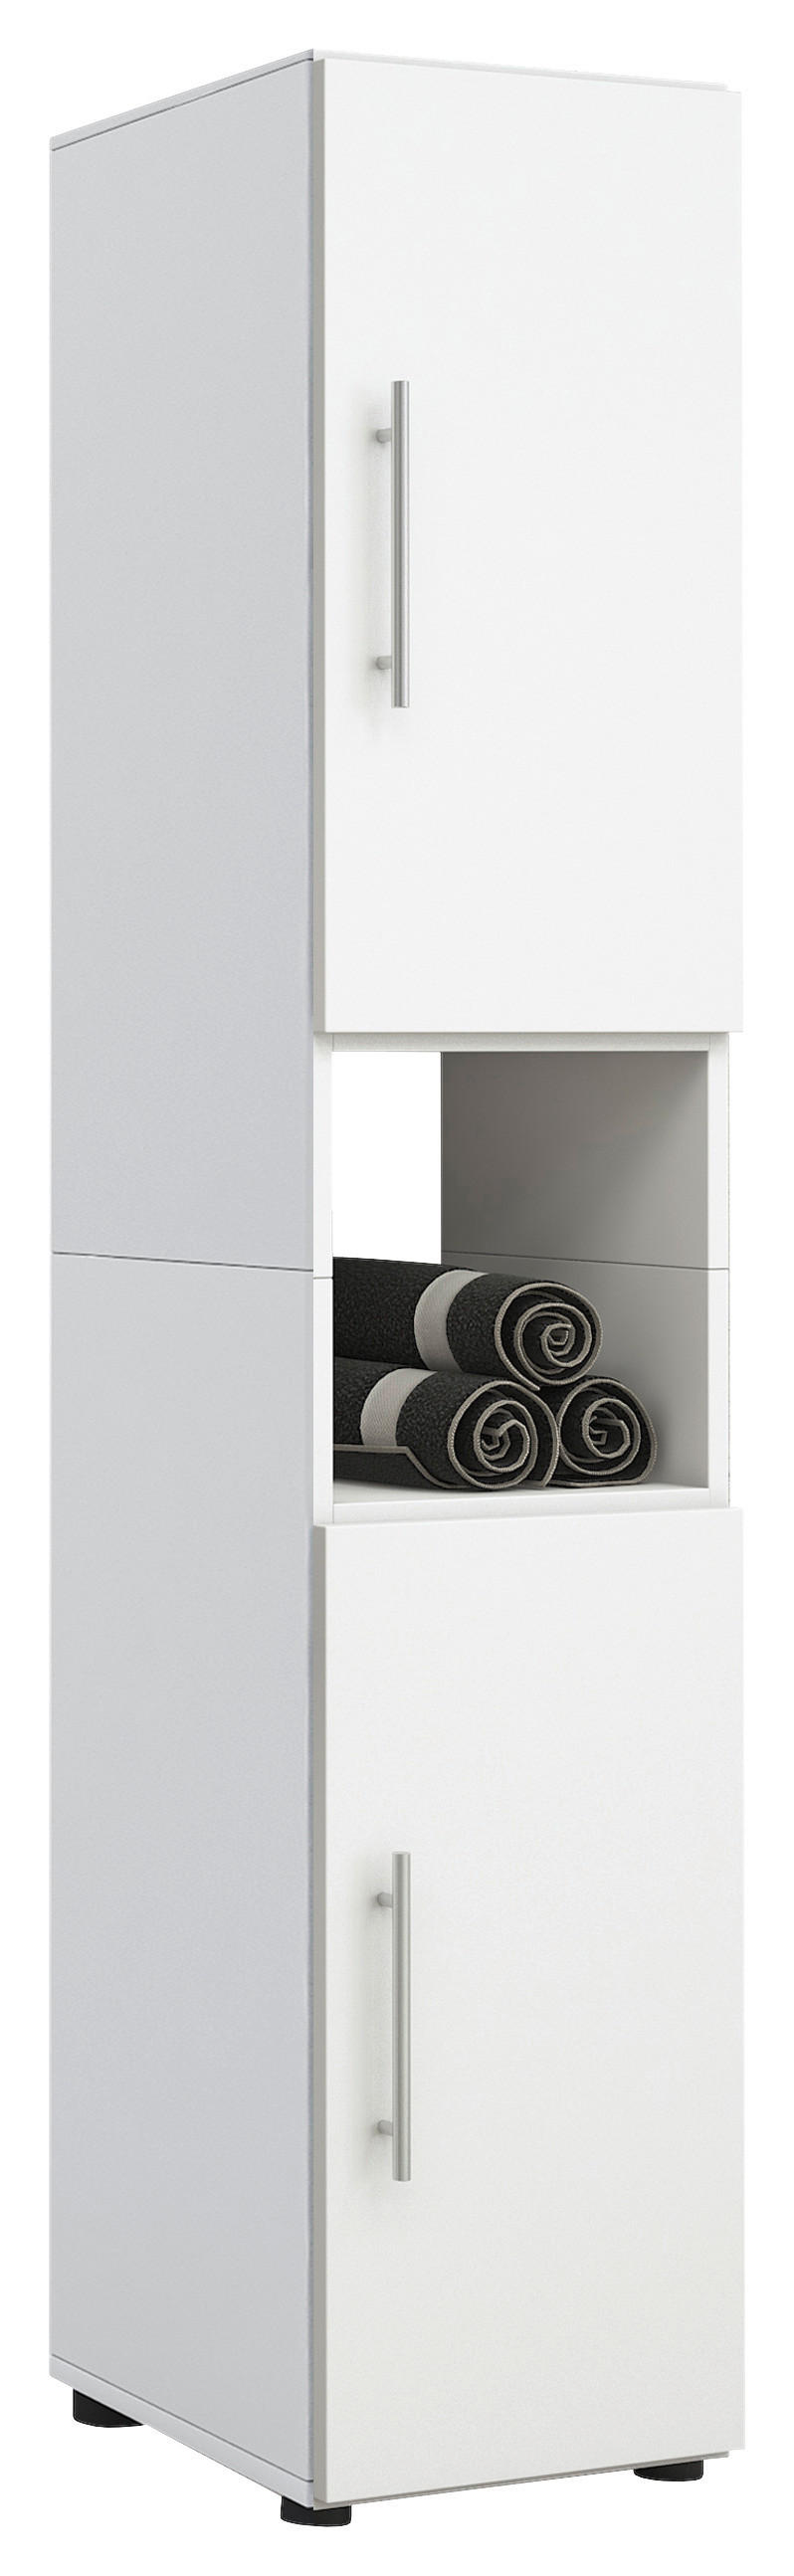 HOCHSCHRANK Weiß  - Silberfarben/Schwarz, KONVENTIONELL, Holzwerkstoff/Kunststoff (31/160/30cm) - MID.YOU